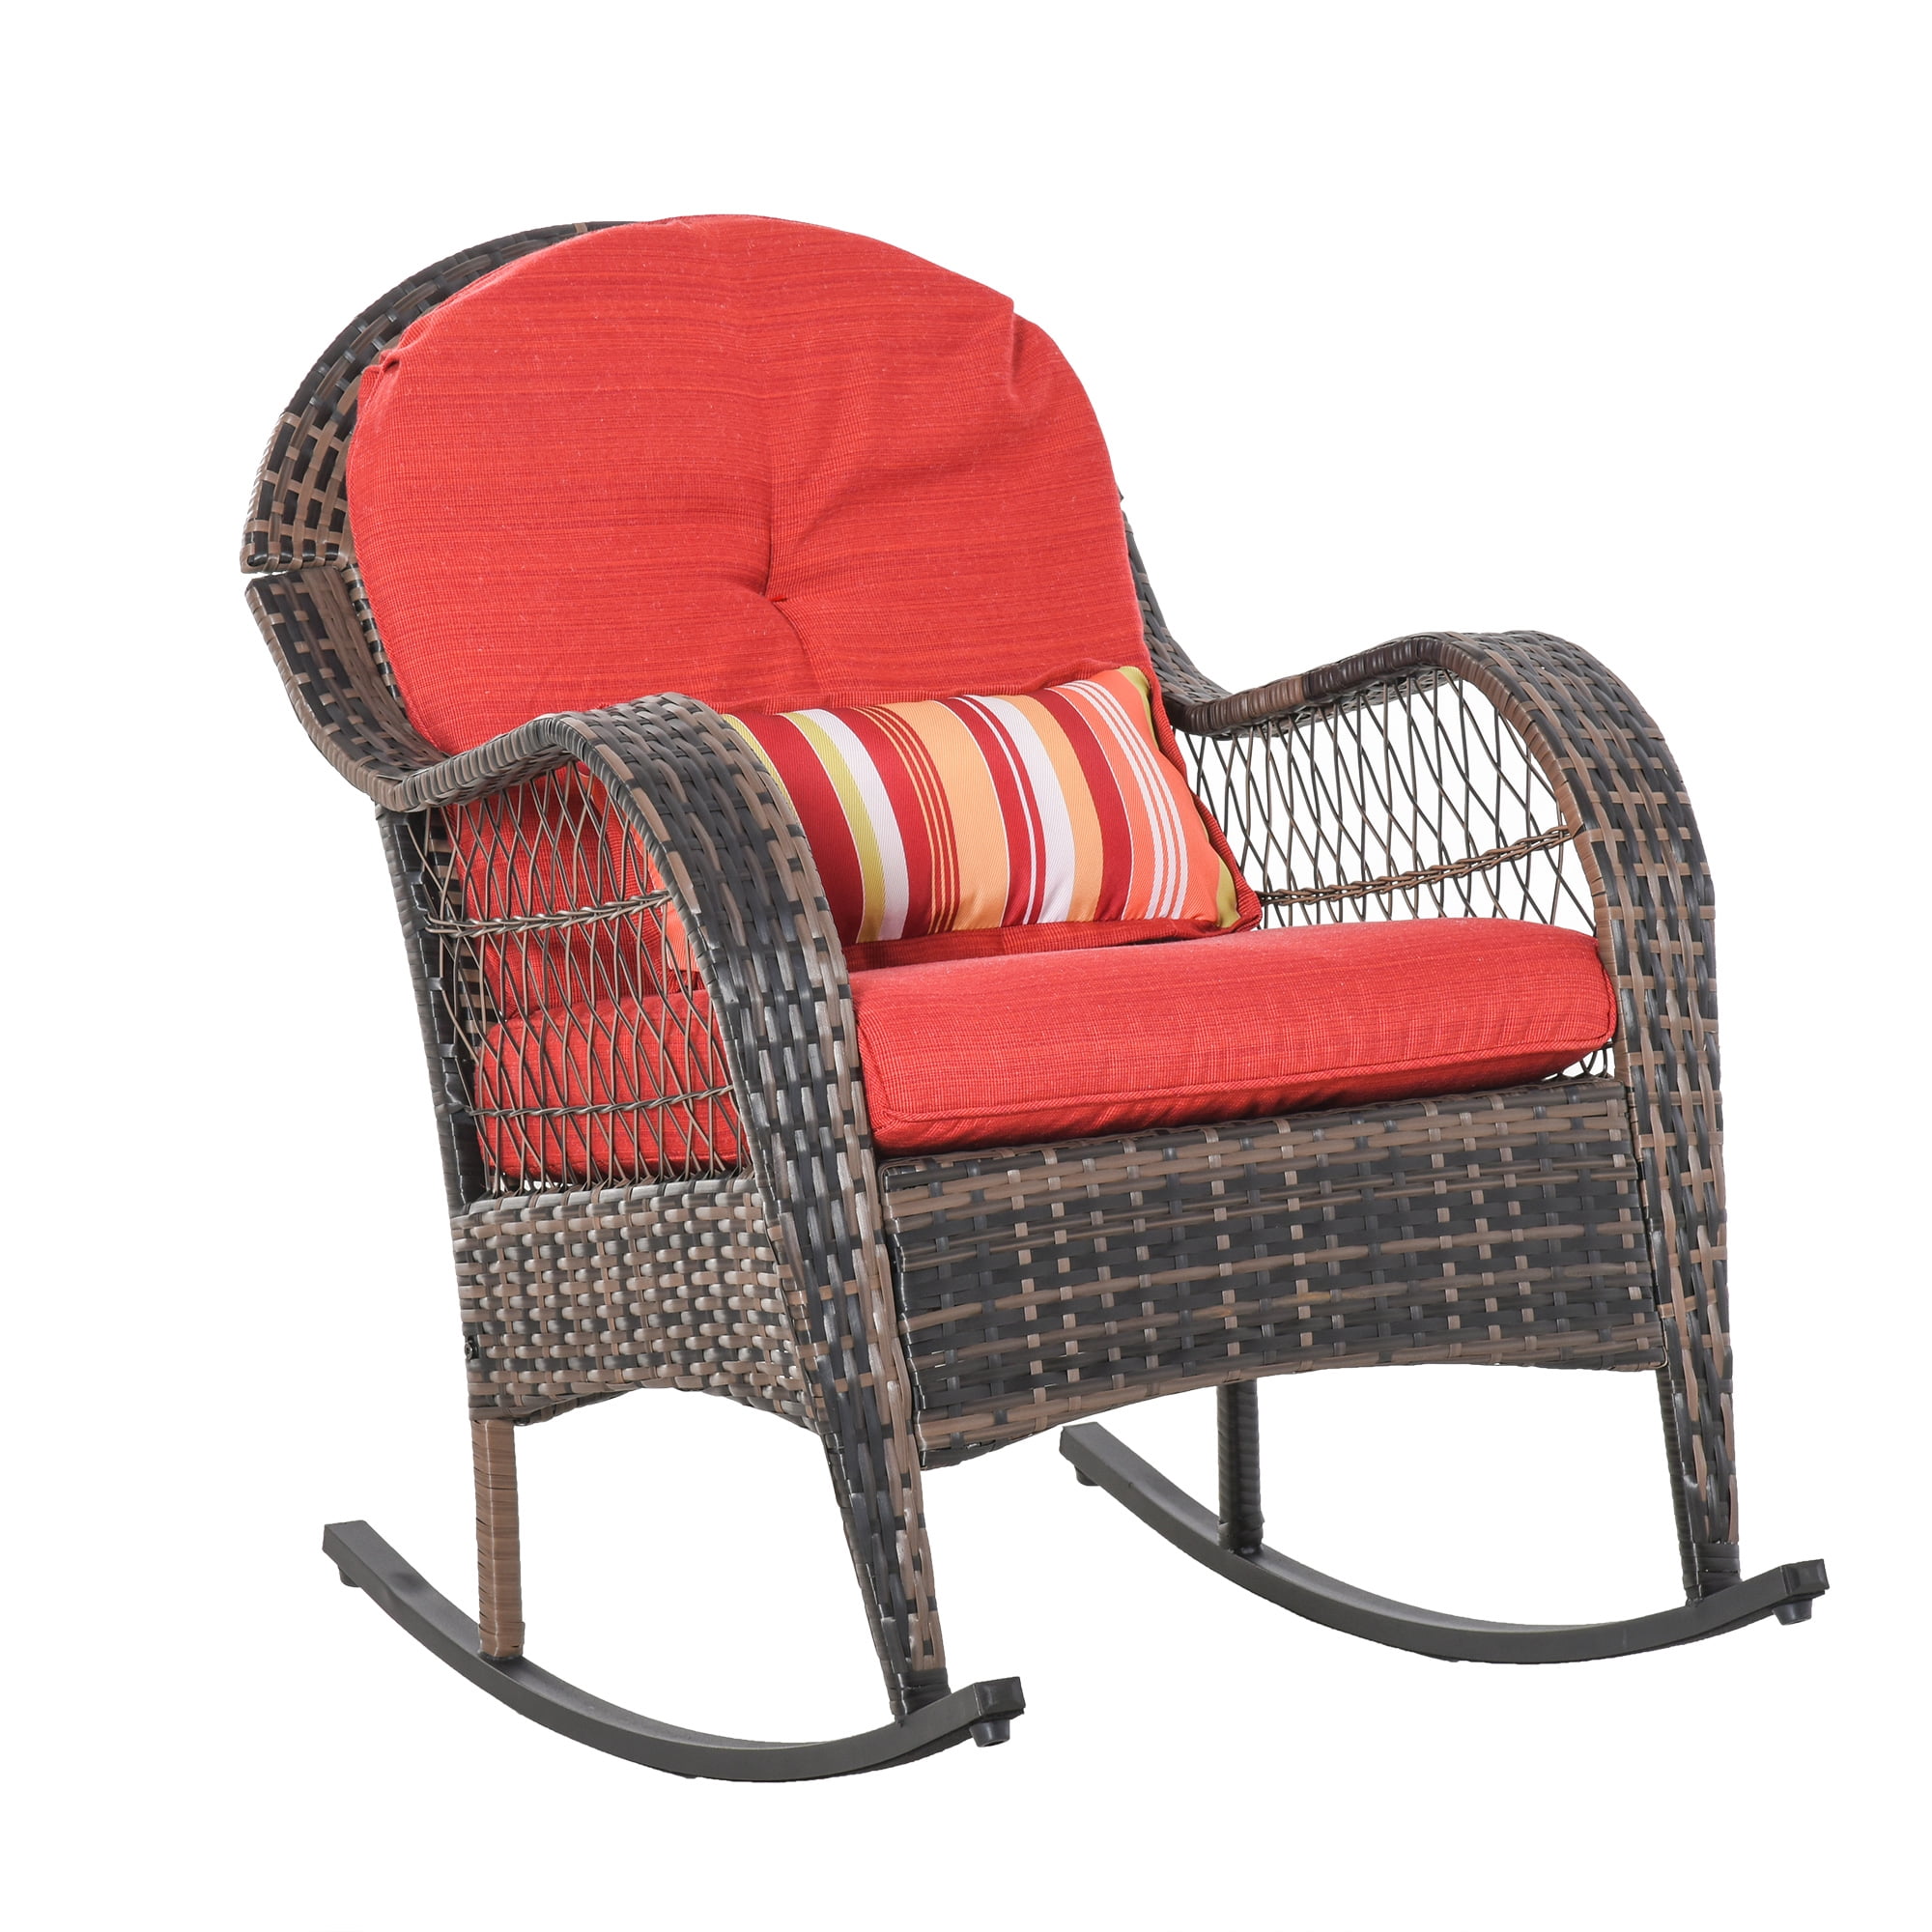 Outsunny PE Rattan Rocking Chair Garden Furniture Patio Relaxer Outdoor